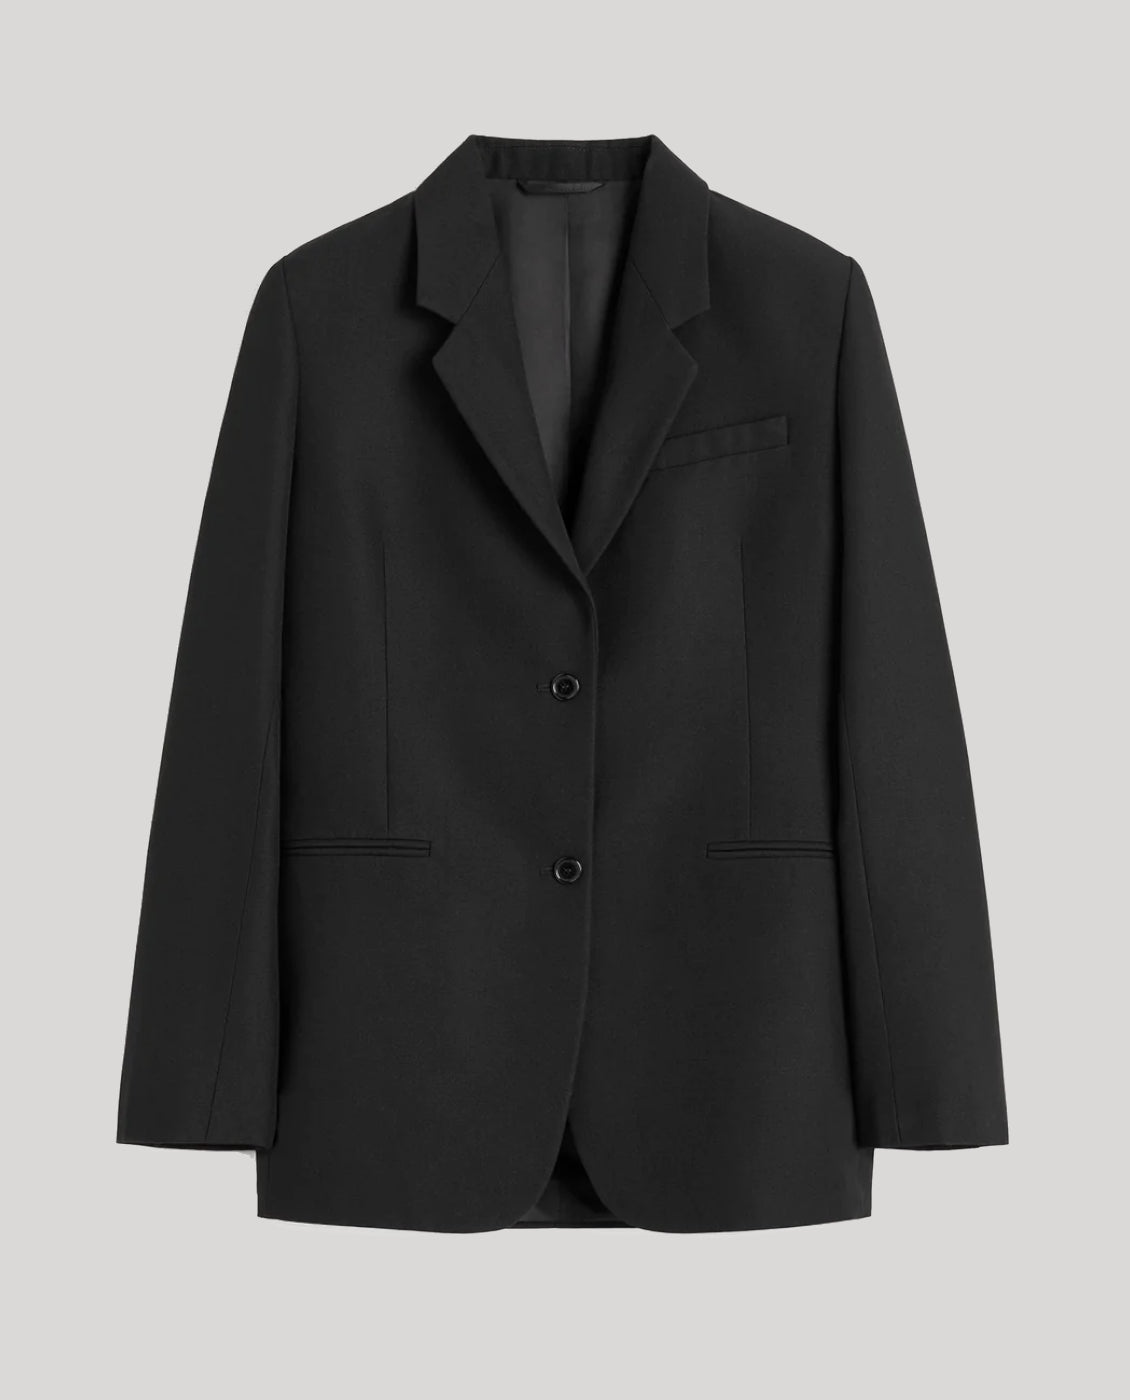 Toteme Black Suit Jacket